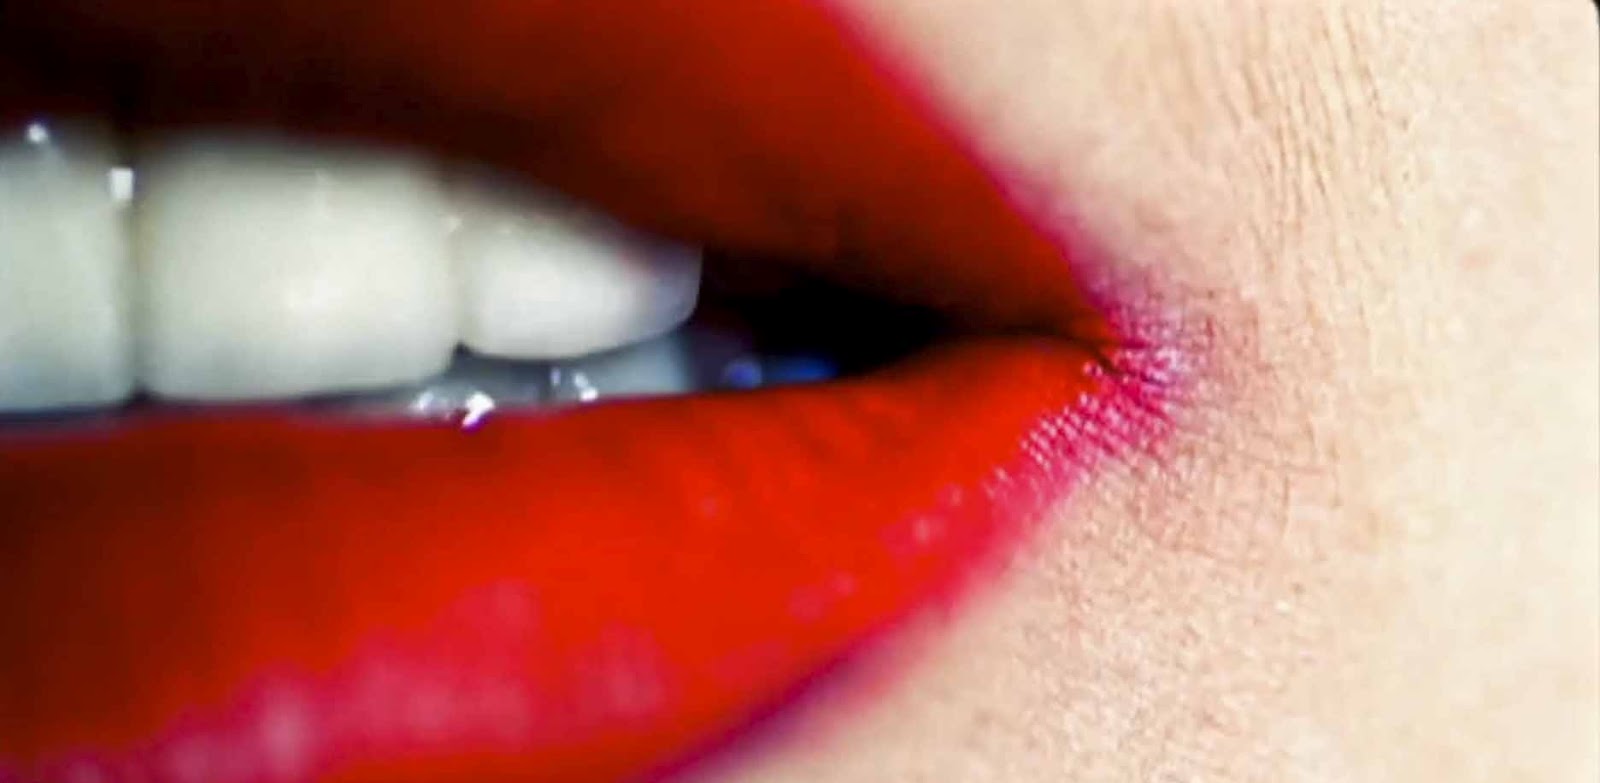 http://4.bp.blogspot.com/-d98Z69kxYcg/T7_r6JJleOI/AAAAAAAABg8/6UdEVSiW5qw/s1600/Lady-Gaga-Red-Lipstick.jpg